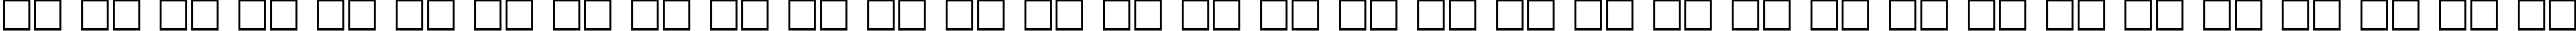 Пример написания русского алфавита шрифтом ChicagoCyr